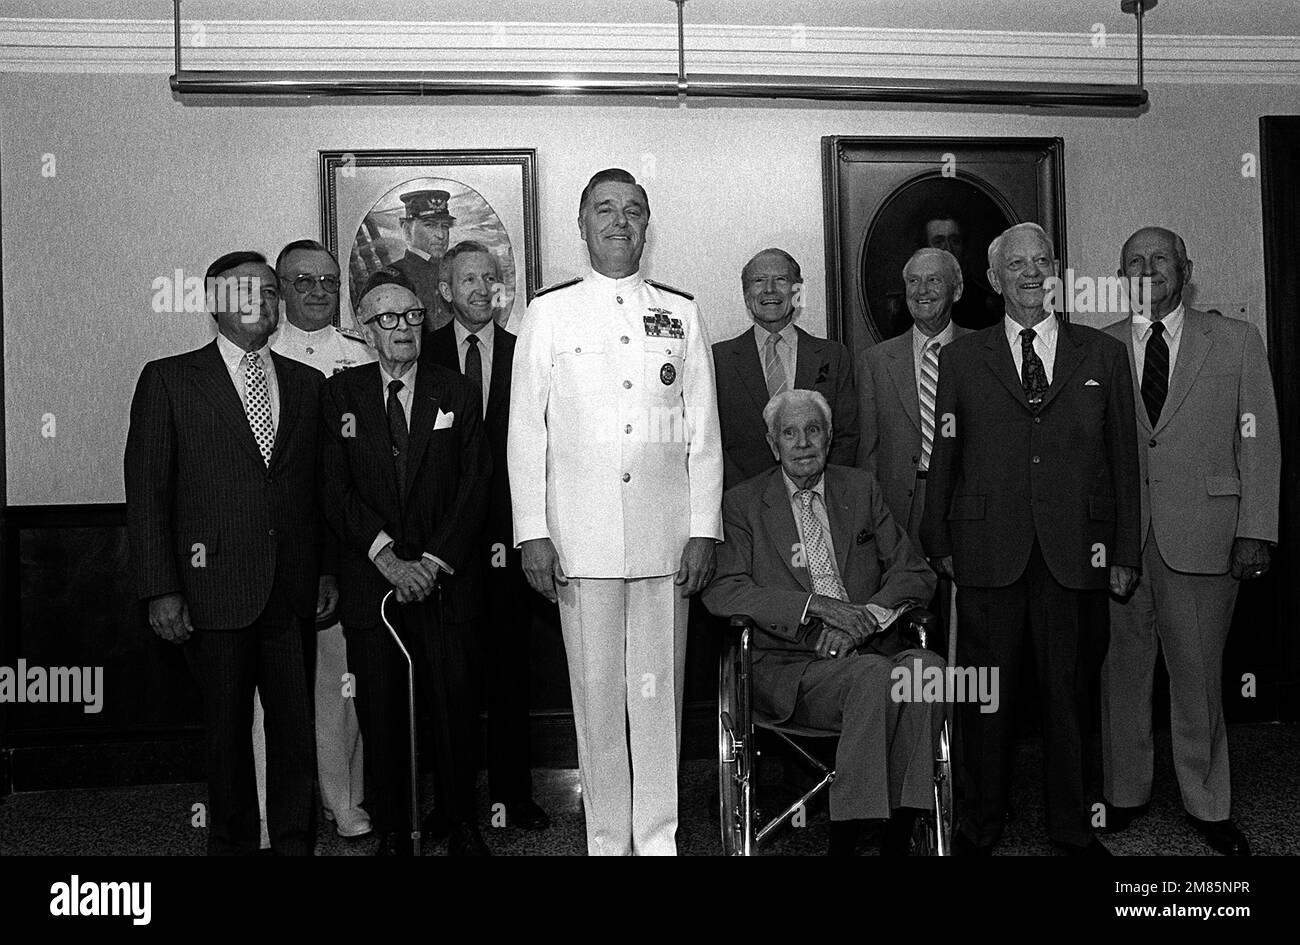 Ocho ex Jefes de Operaciones Navales (CNO) asisten a una ceremonia de dedicación y presentación de retratos en el Pentágono organizada por el actual almirante de la CNO James D. Watkins. Almirante Carlisle A.H. Trost, quien relevará a Watkins como CNO el 30 de junio, también asistirá a la ceremonia. Se muestran, de izquierda a derecha, James L. Holloway III, Trost, Robert B. Carney, Thomas B. Hayward, Watkins, George W. Anderson, (sentado), Elmo R. Zumwalt Jr., David L. McDonald, Arleigh A. Burke y Thomas H. Moorer. Base: Arlington Estado: Virginia (VA) País: Estados Unidos de América (USA) Foto de stock